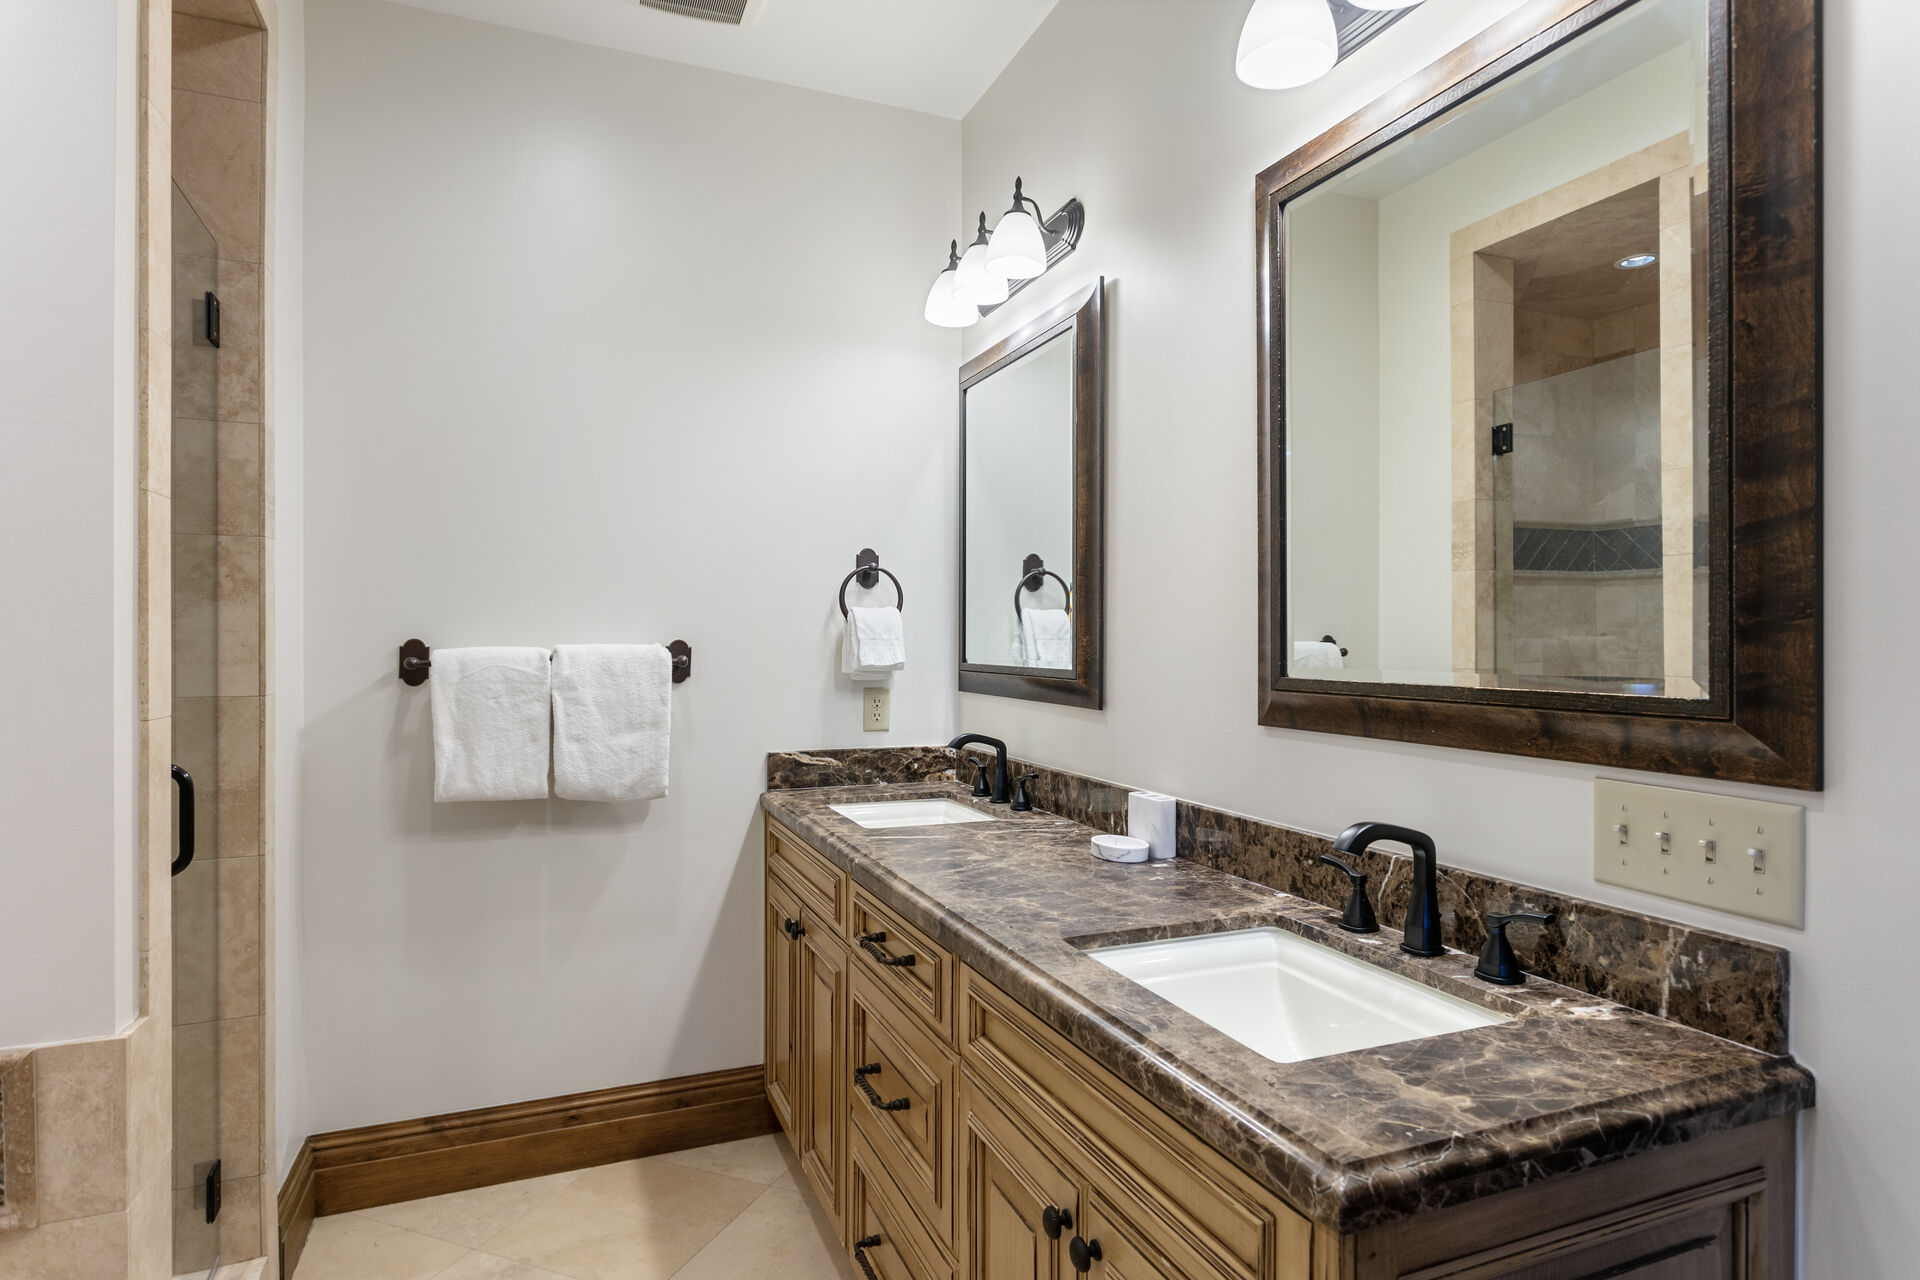 Master bedroom ensuite bathroom with dual vanity sinks